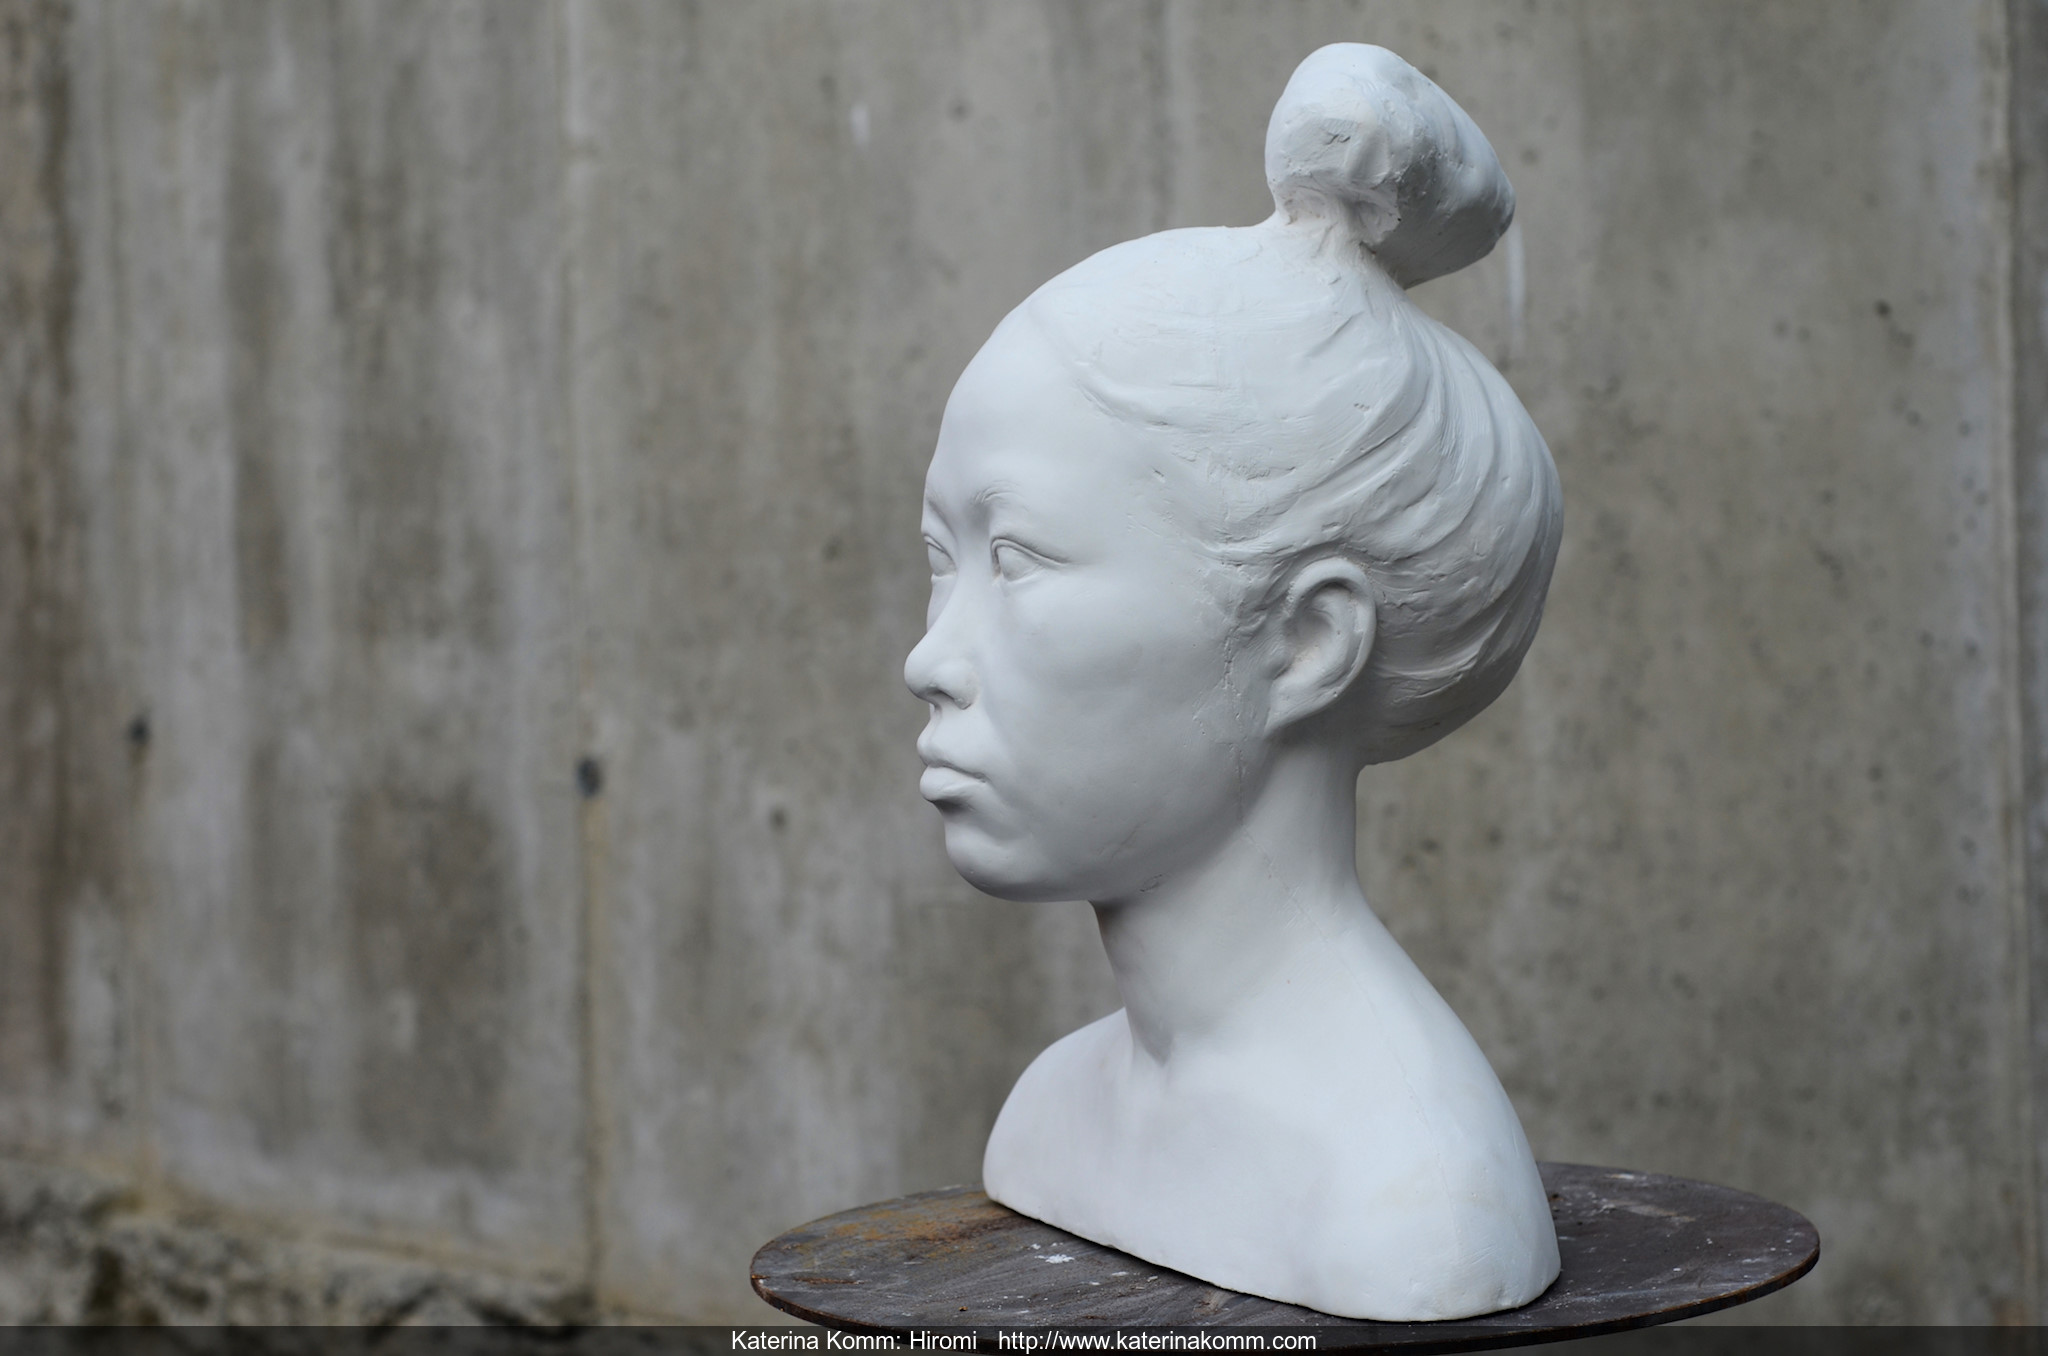 Katerina Komm, sculpture, PRÁCE: Hiromi